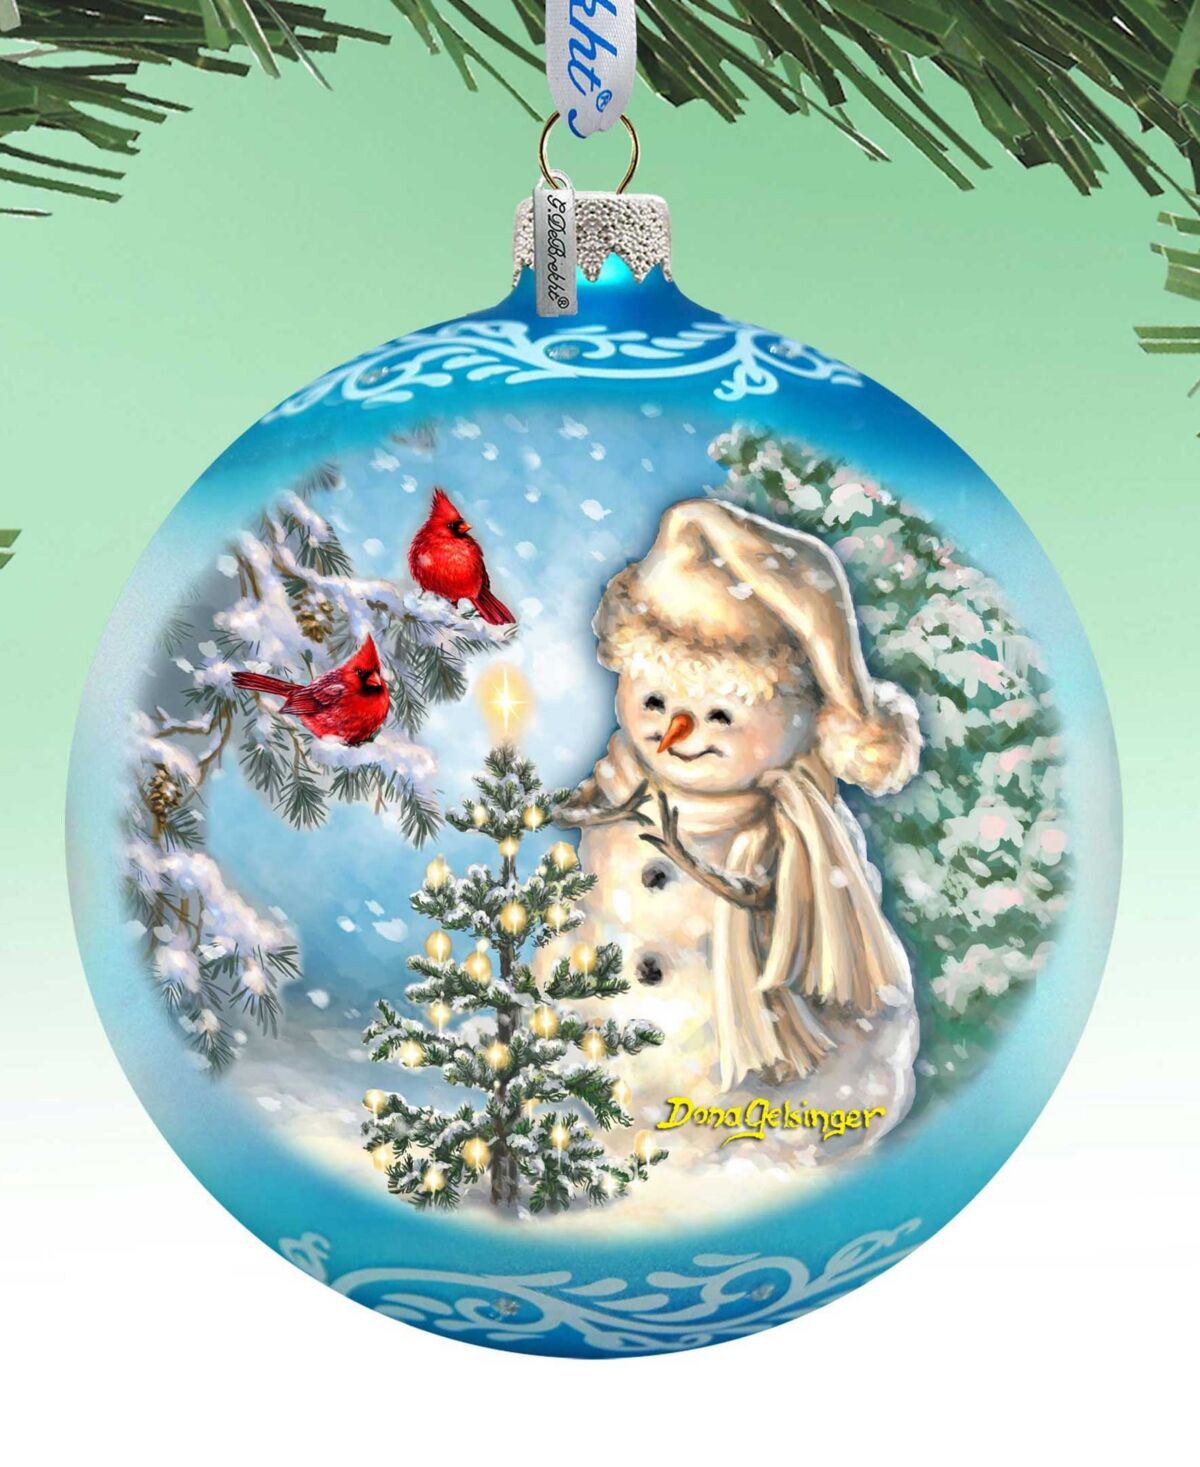 Designocracy Glowing Snowman Large Mercury Glass Collectible Ornaments D. Gelsinger - Multi Color